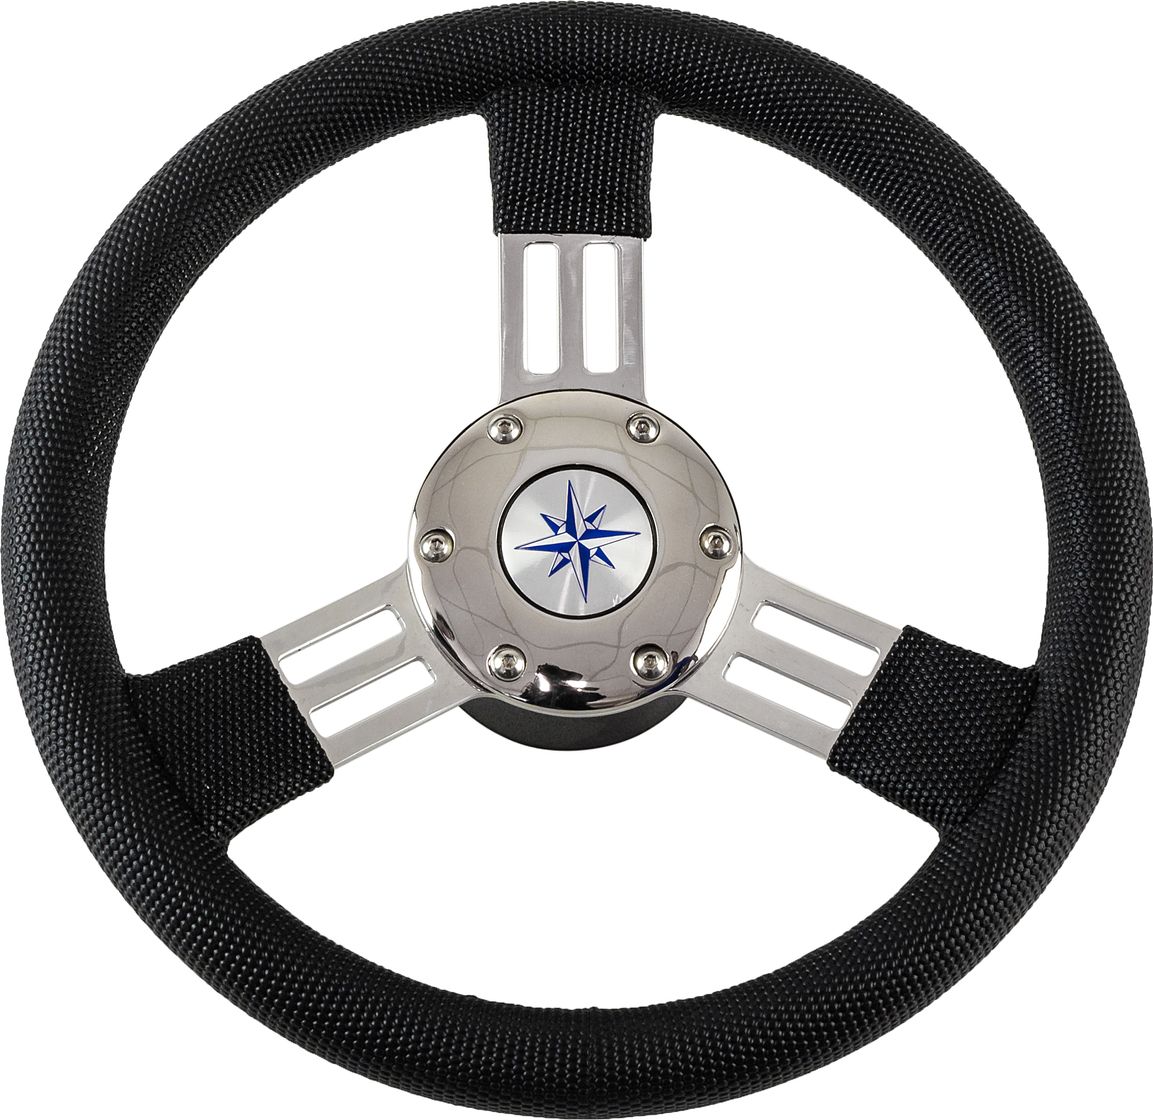 Рулевое колесо PEGASO обод черный, спицы серебряные д. 300 мм VN13327-01 рулевое колесо leader tanegum белый обод серебряные спицы д 360 мм vn7360 08